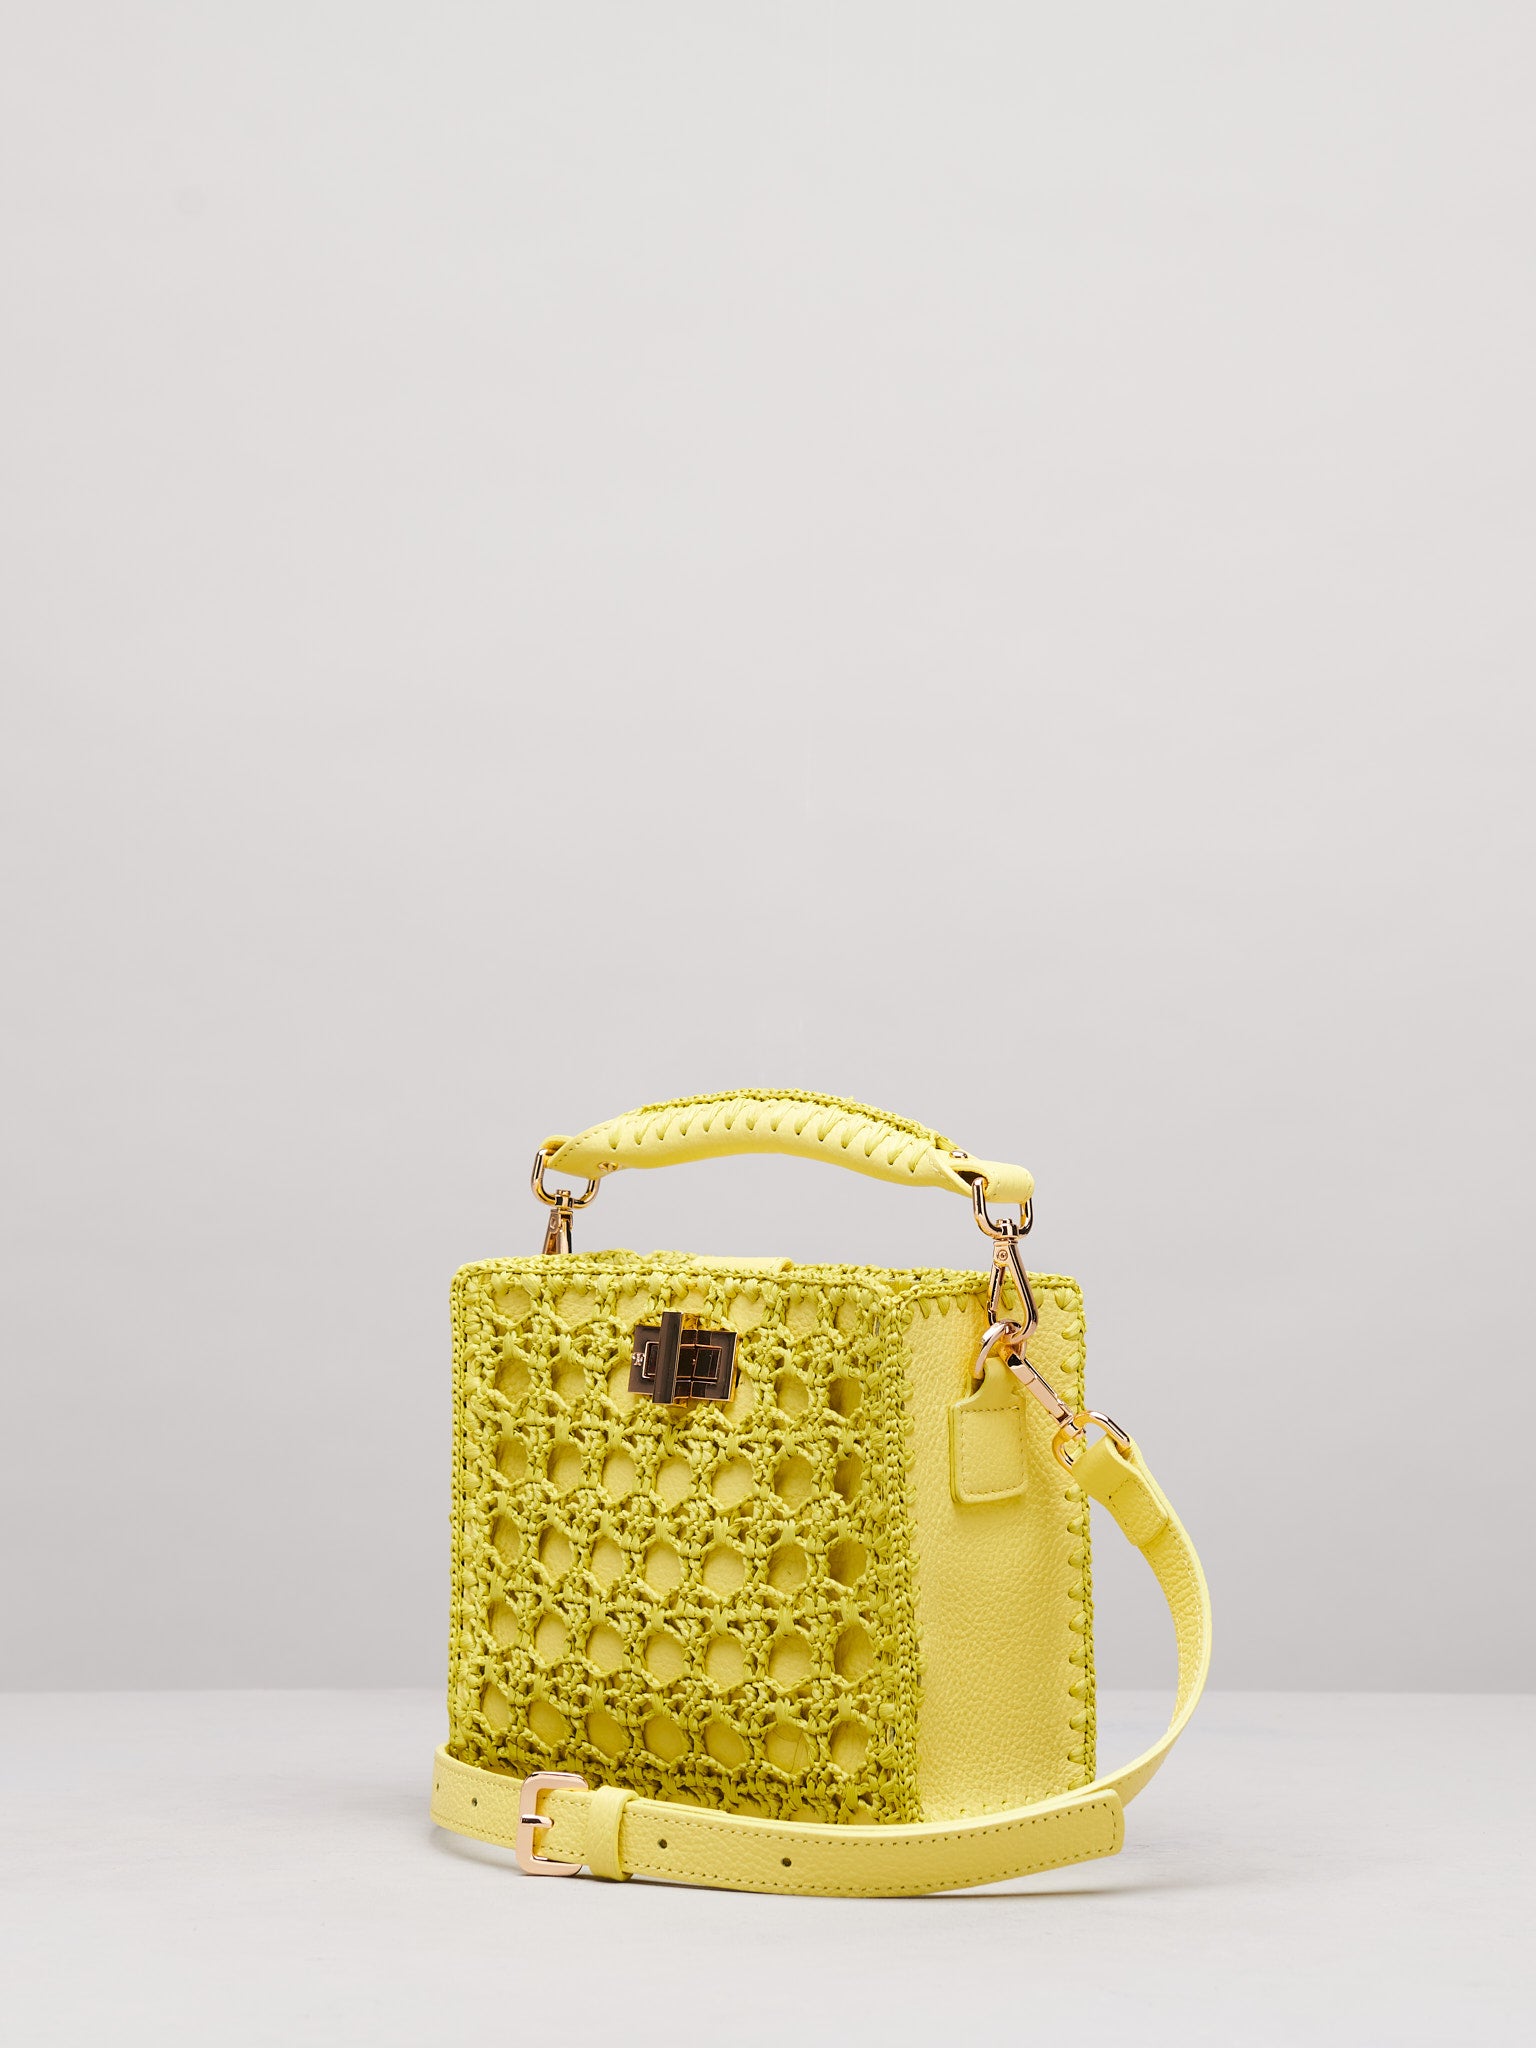 Sylvia Small Crochet Handbag in Lemon